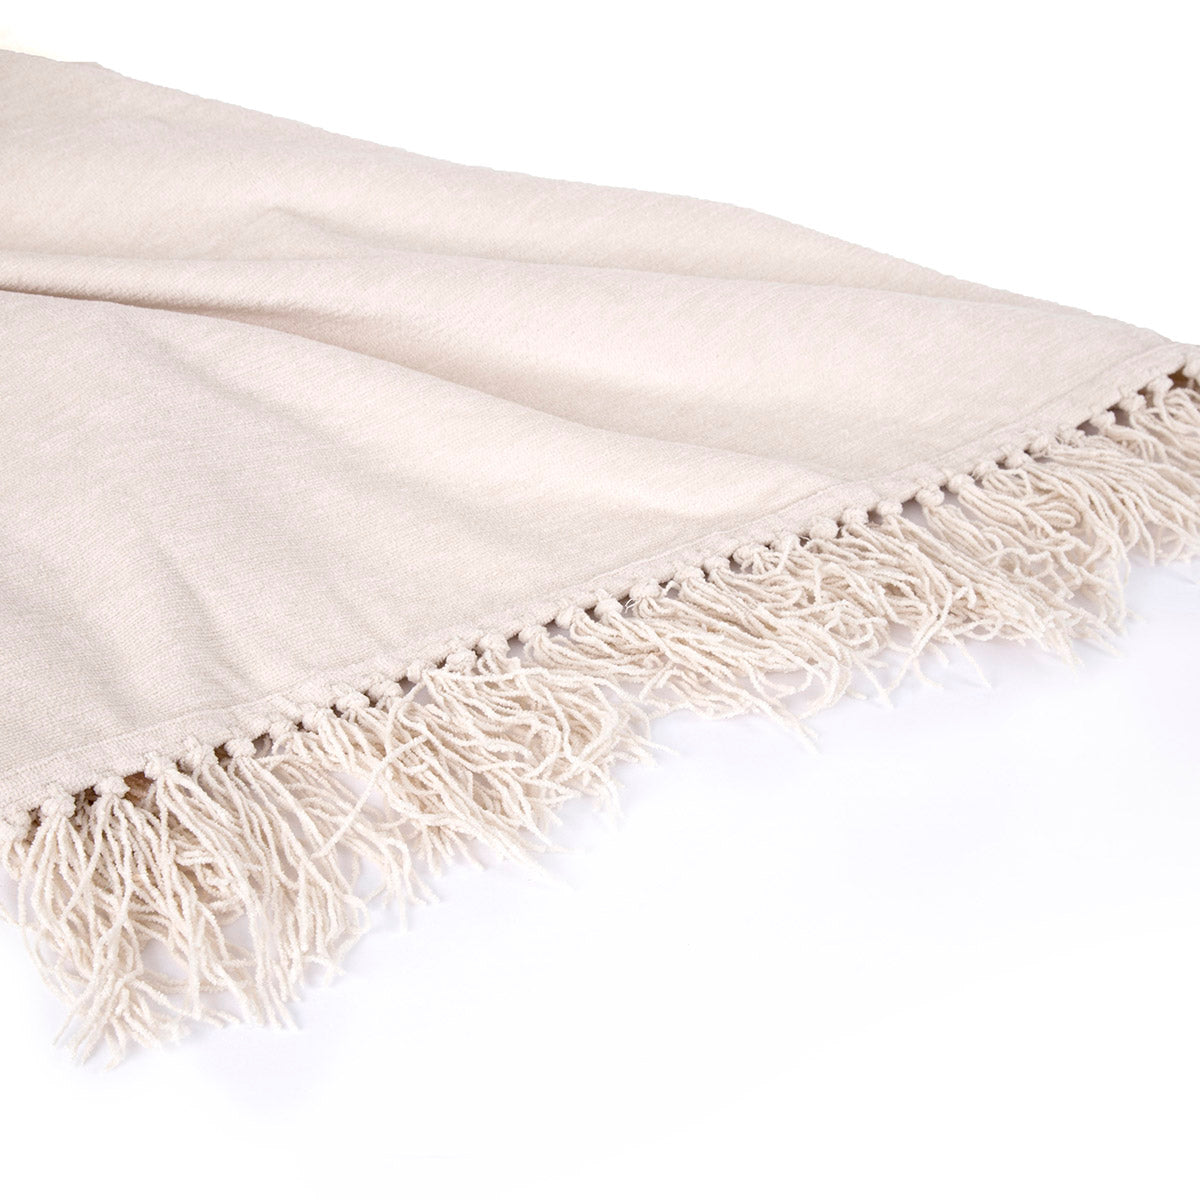 Jessica 100% Cotton Solid Woven Super Soft Ecru Throw/Sofa/Multi Cover/Single Bed Cover